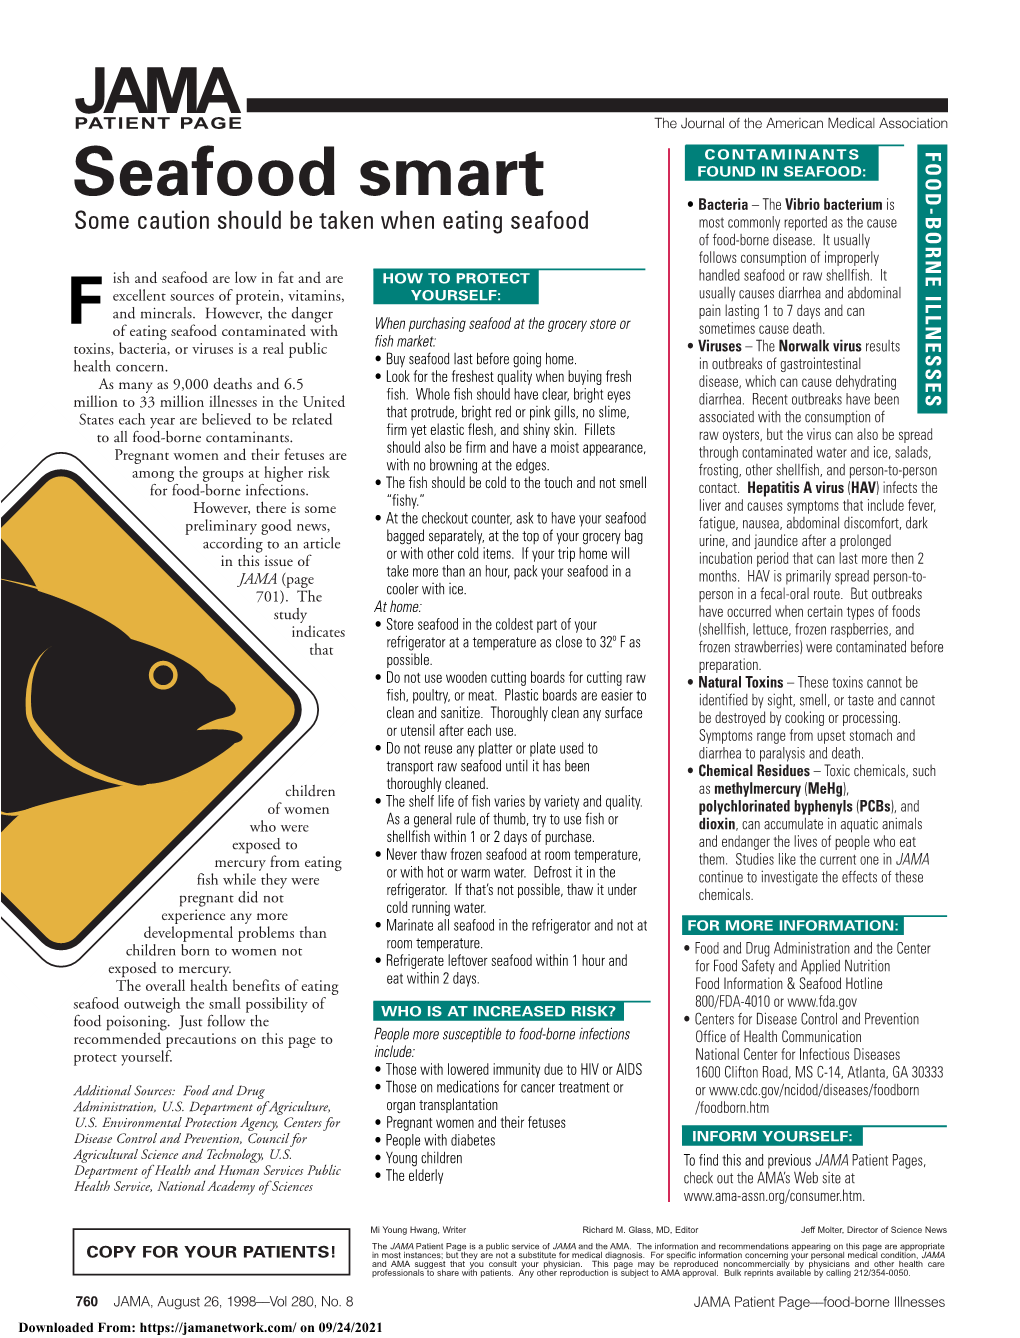 Seafood Smart